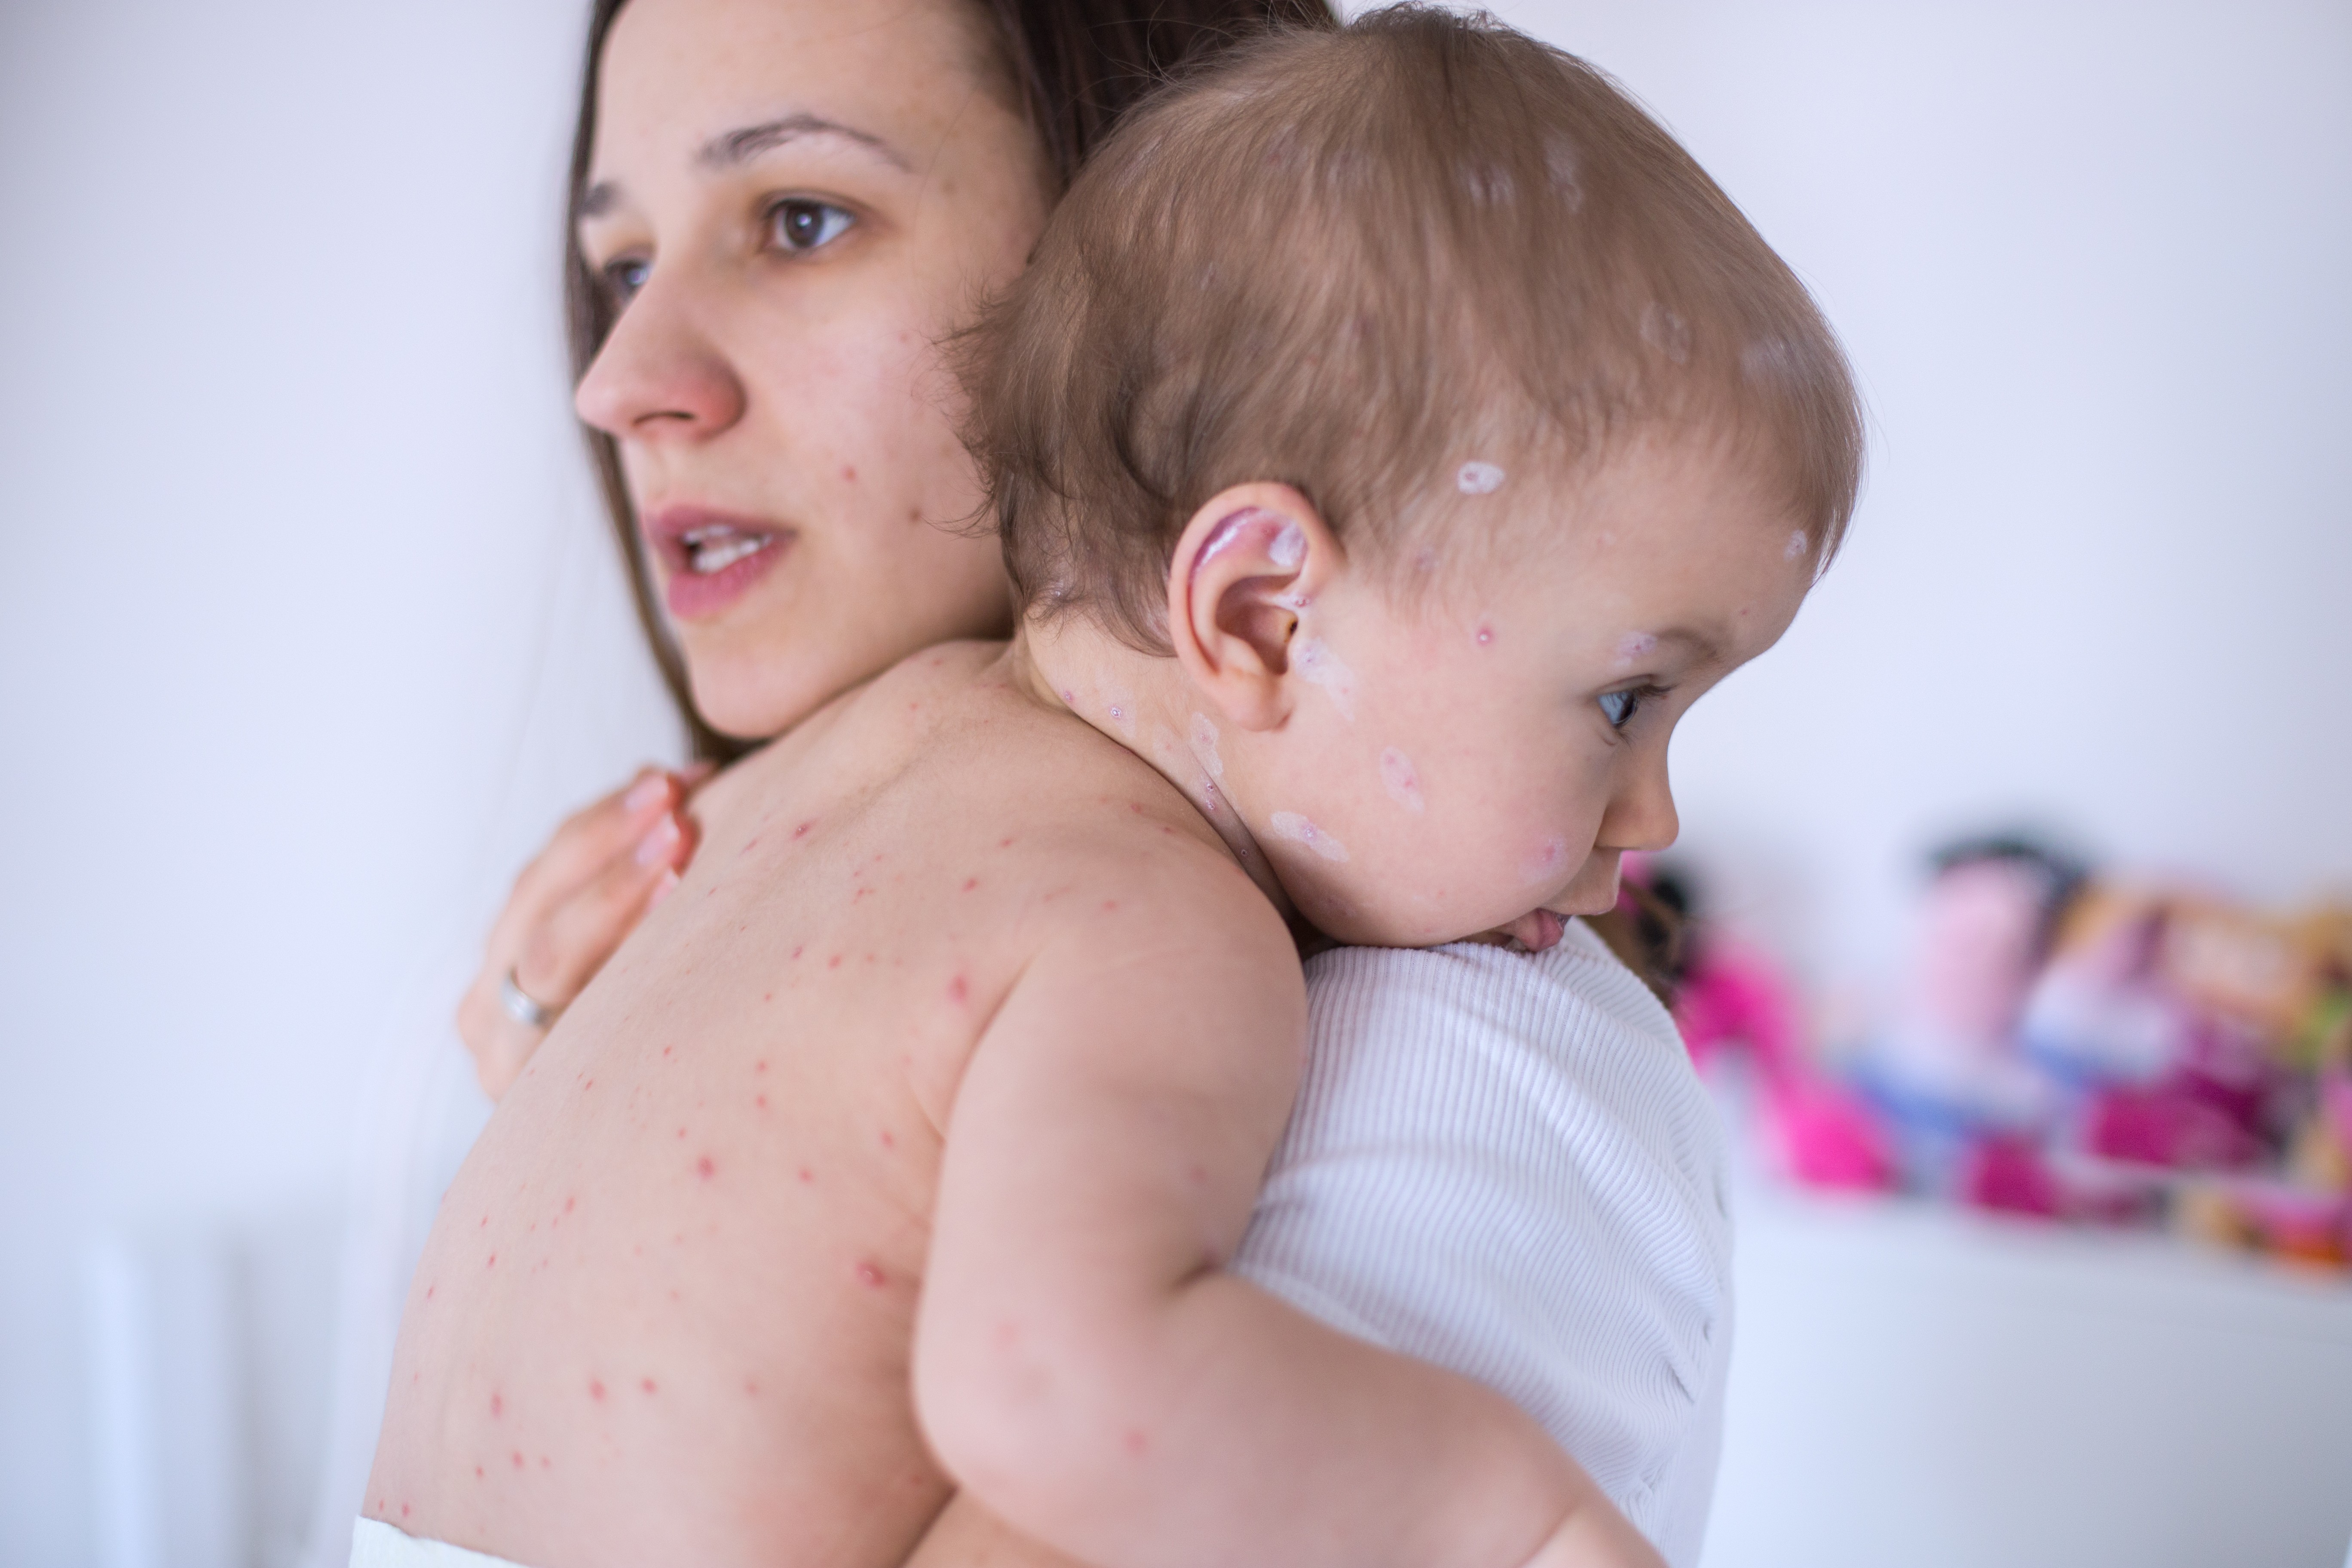 Sarampo: por que doenças consideradas erradicadas estão voltando? (Foto: Getty Images)